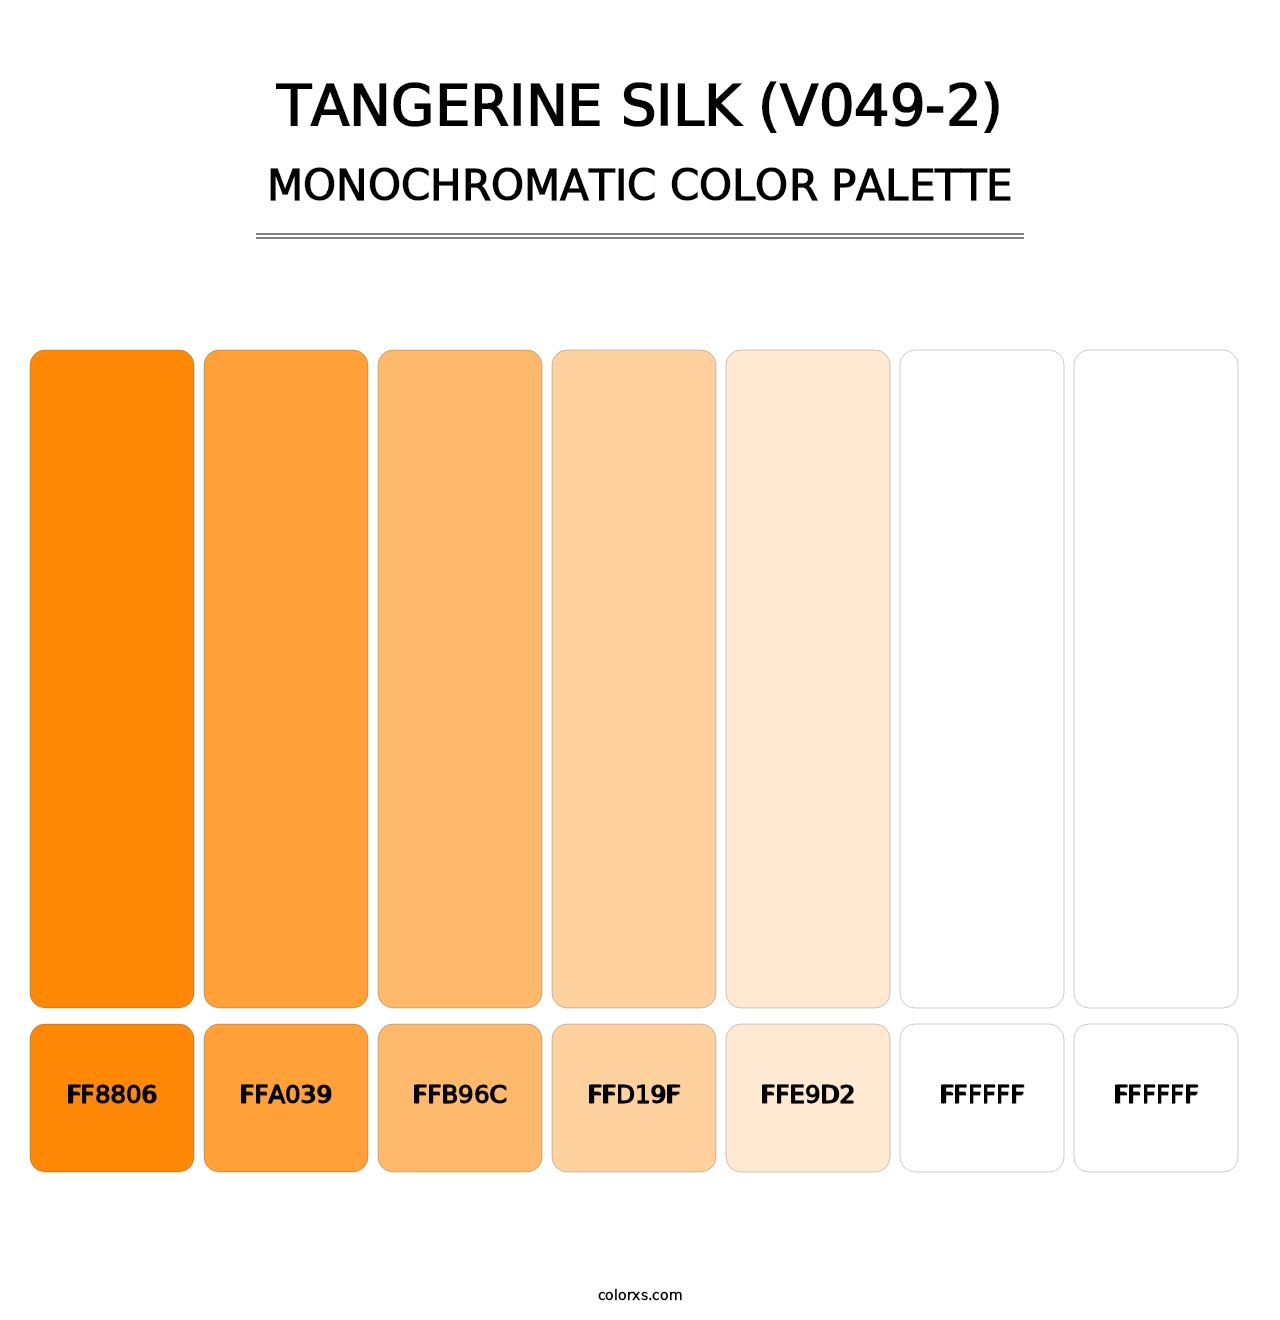 Tangerine Silk (V049-2) - Monochromatic Color Palette